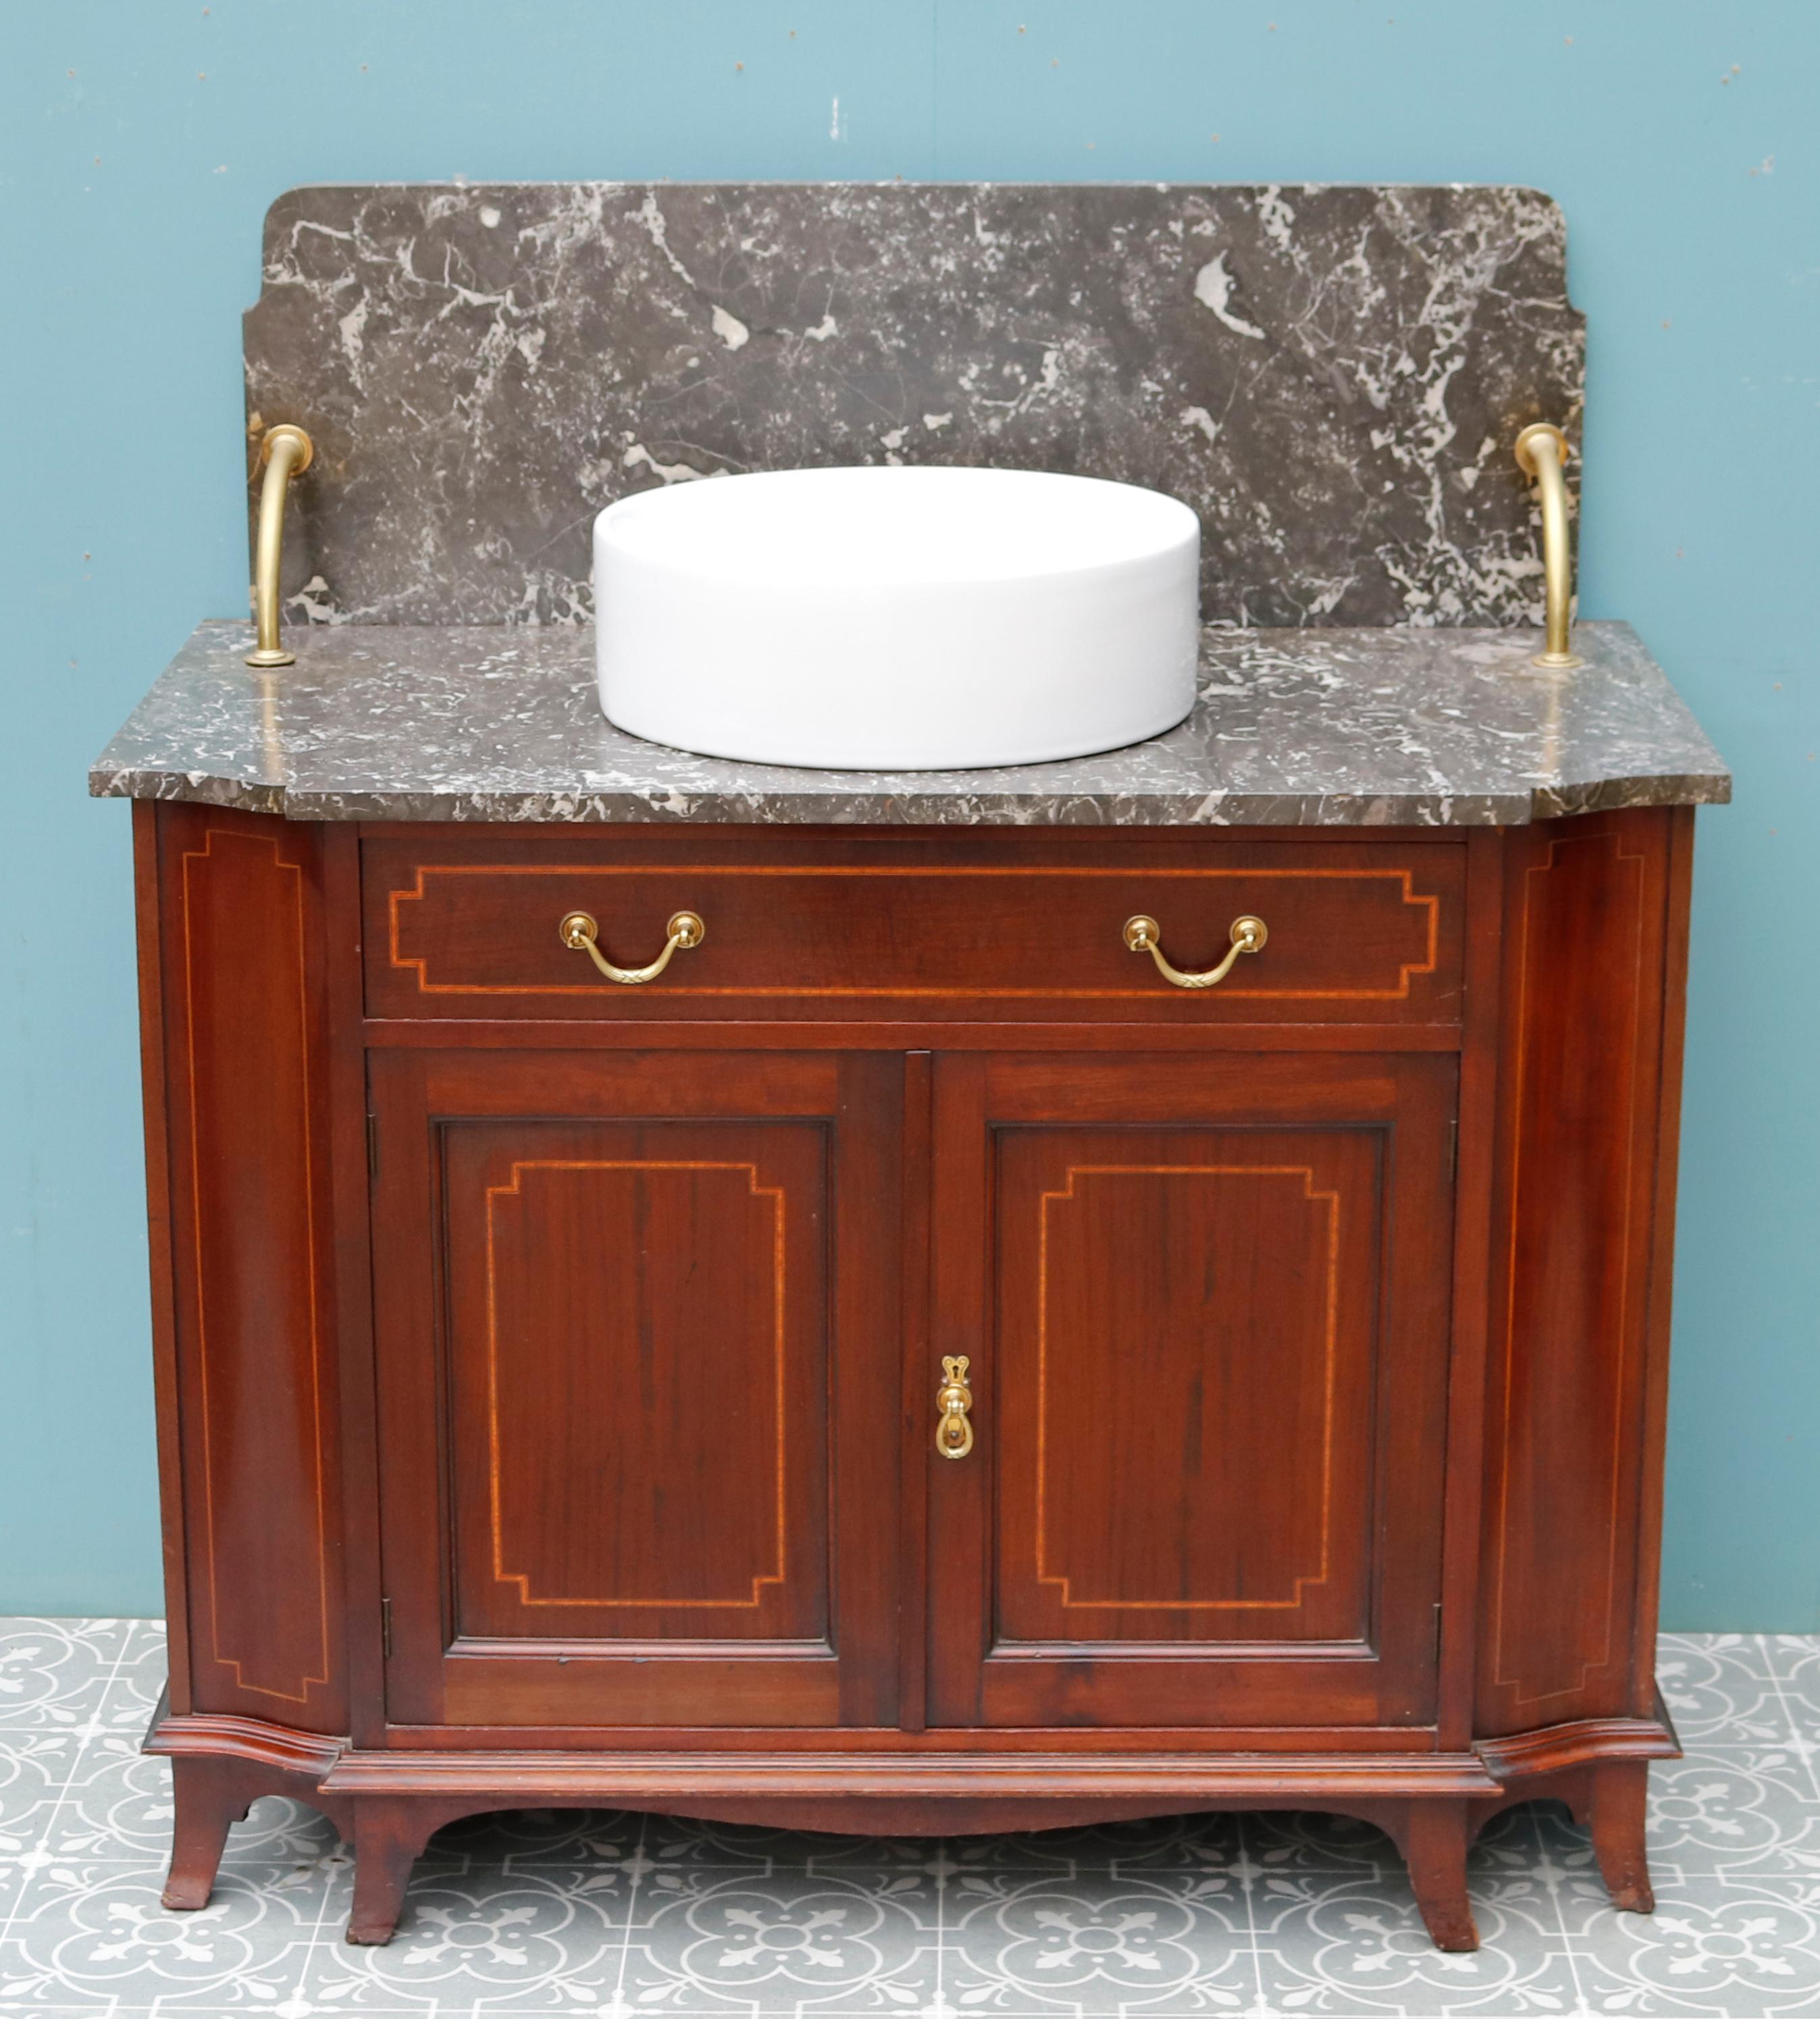 Ein Waschtisch im edwardianischen Stil mit einer geäderten Marmorplatte und einer Rückwand. Der Waschtisch wird mit einer modernen Keramikschüssel geliefert.

Zusätzliche Abmessungen

Gesamthöhe 106,5 cm

Höhe bis zur Theke 76 cm

Breite 99